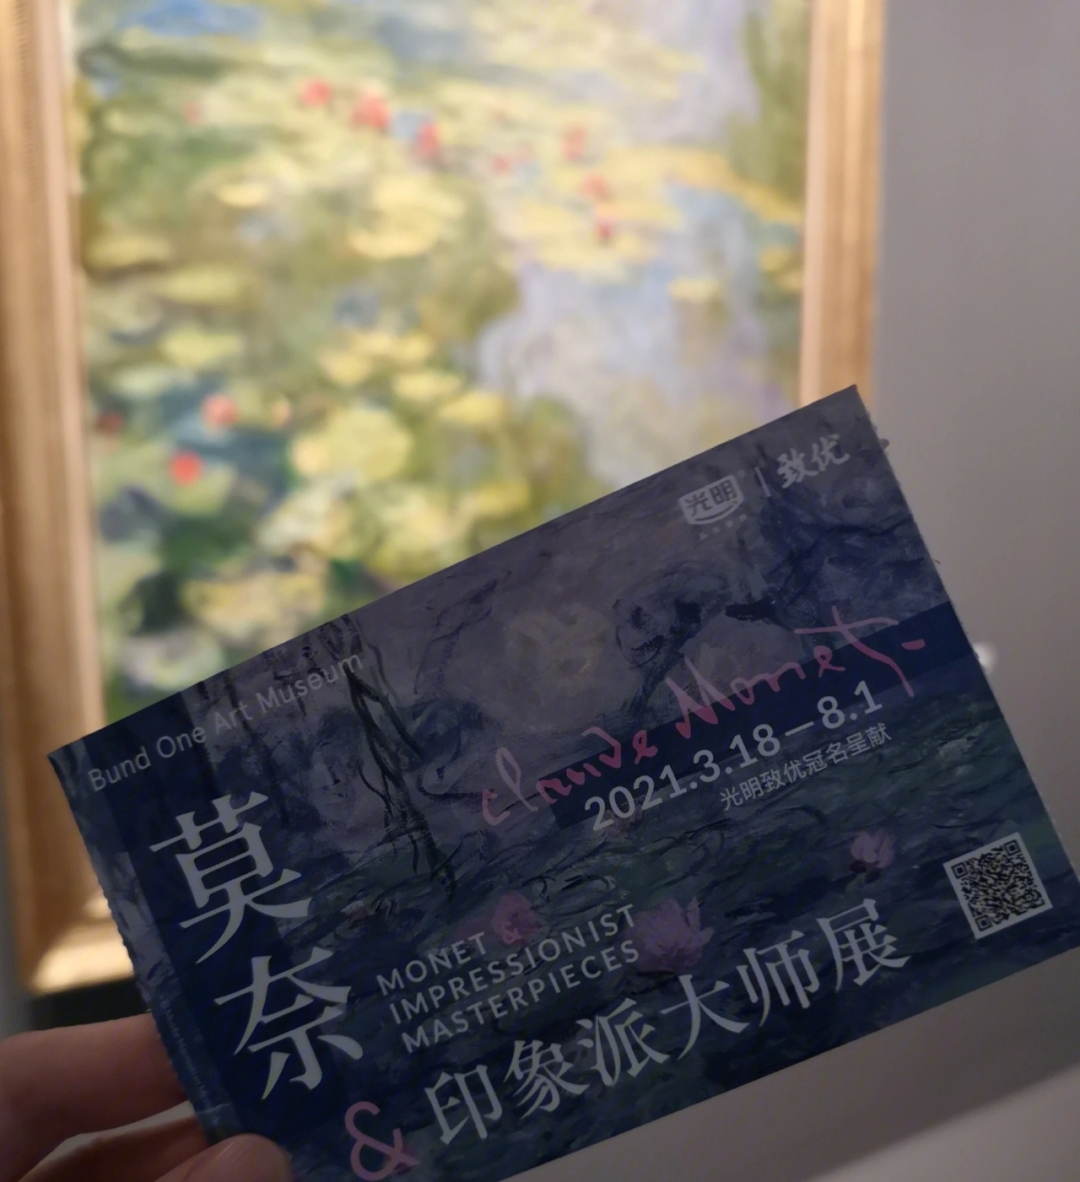 上海莫奈画展门票图片